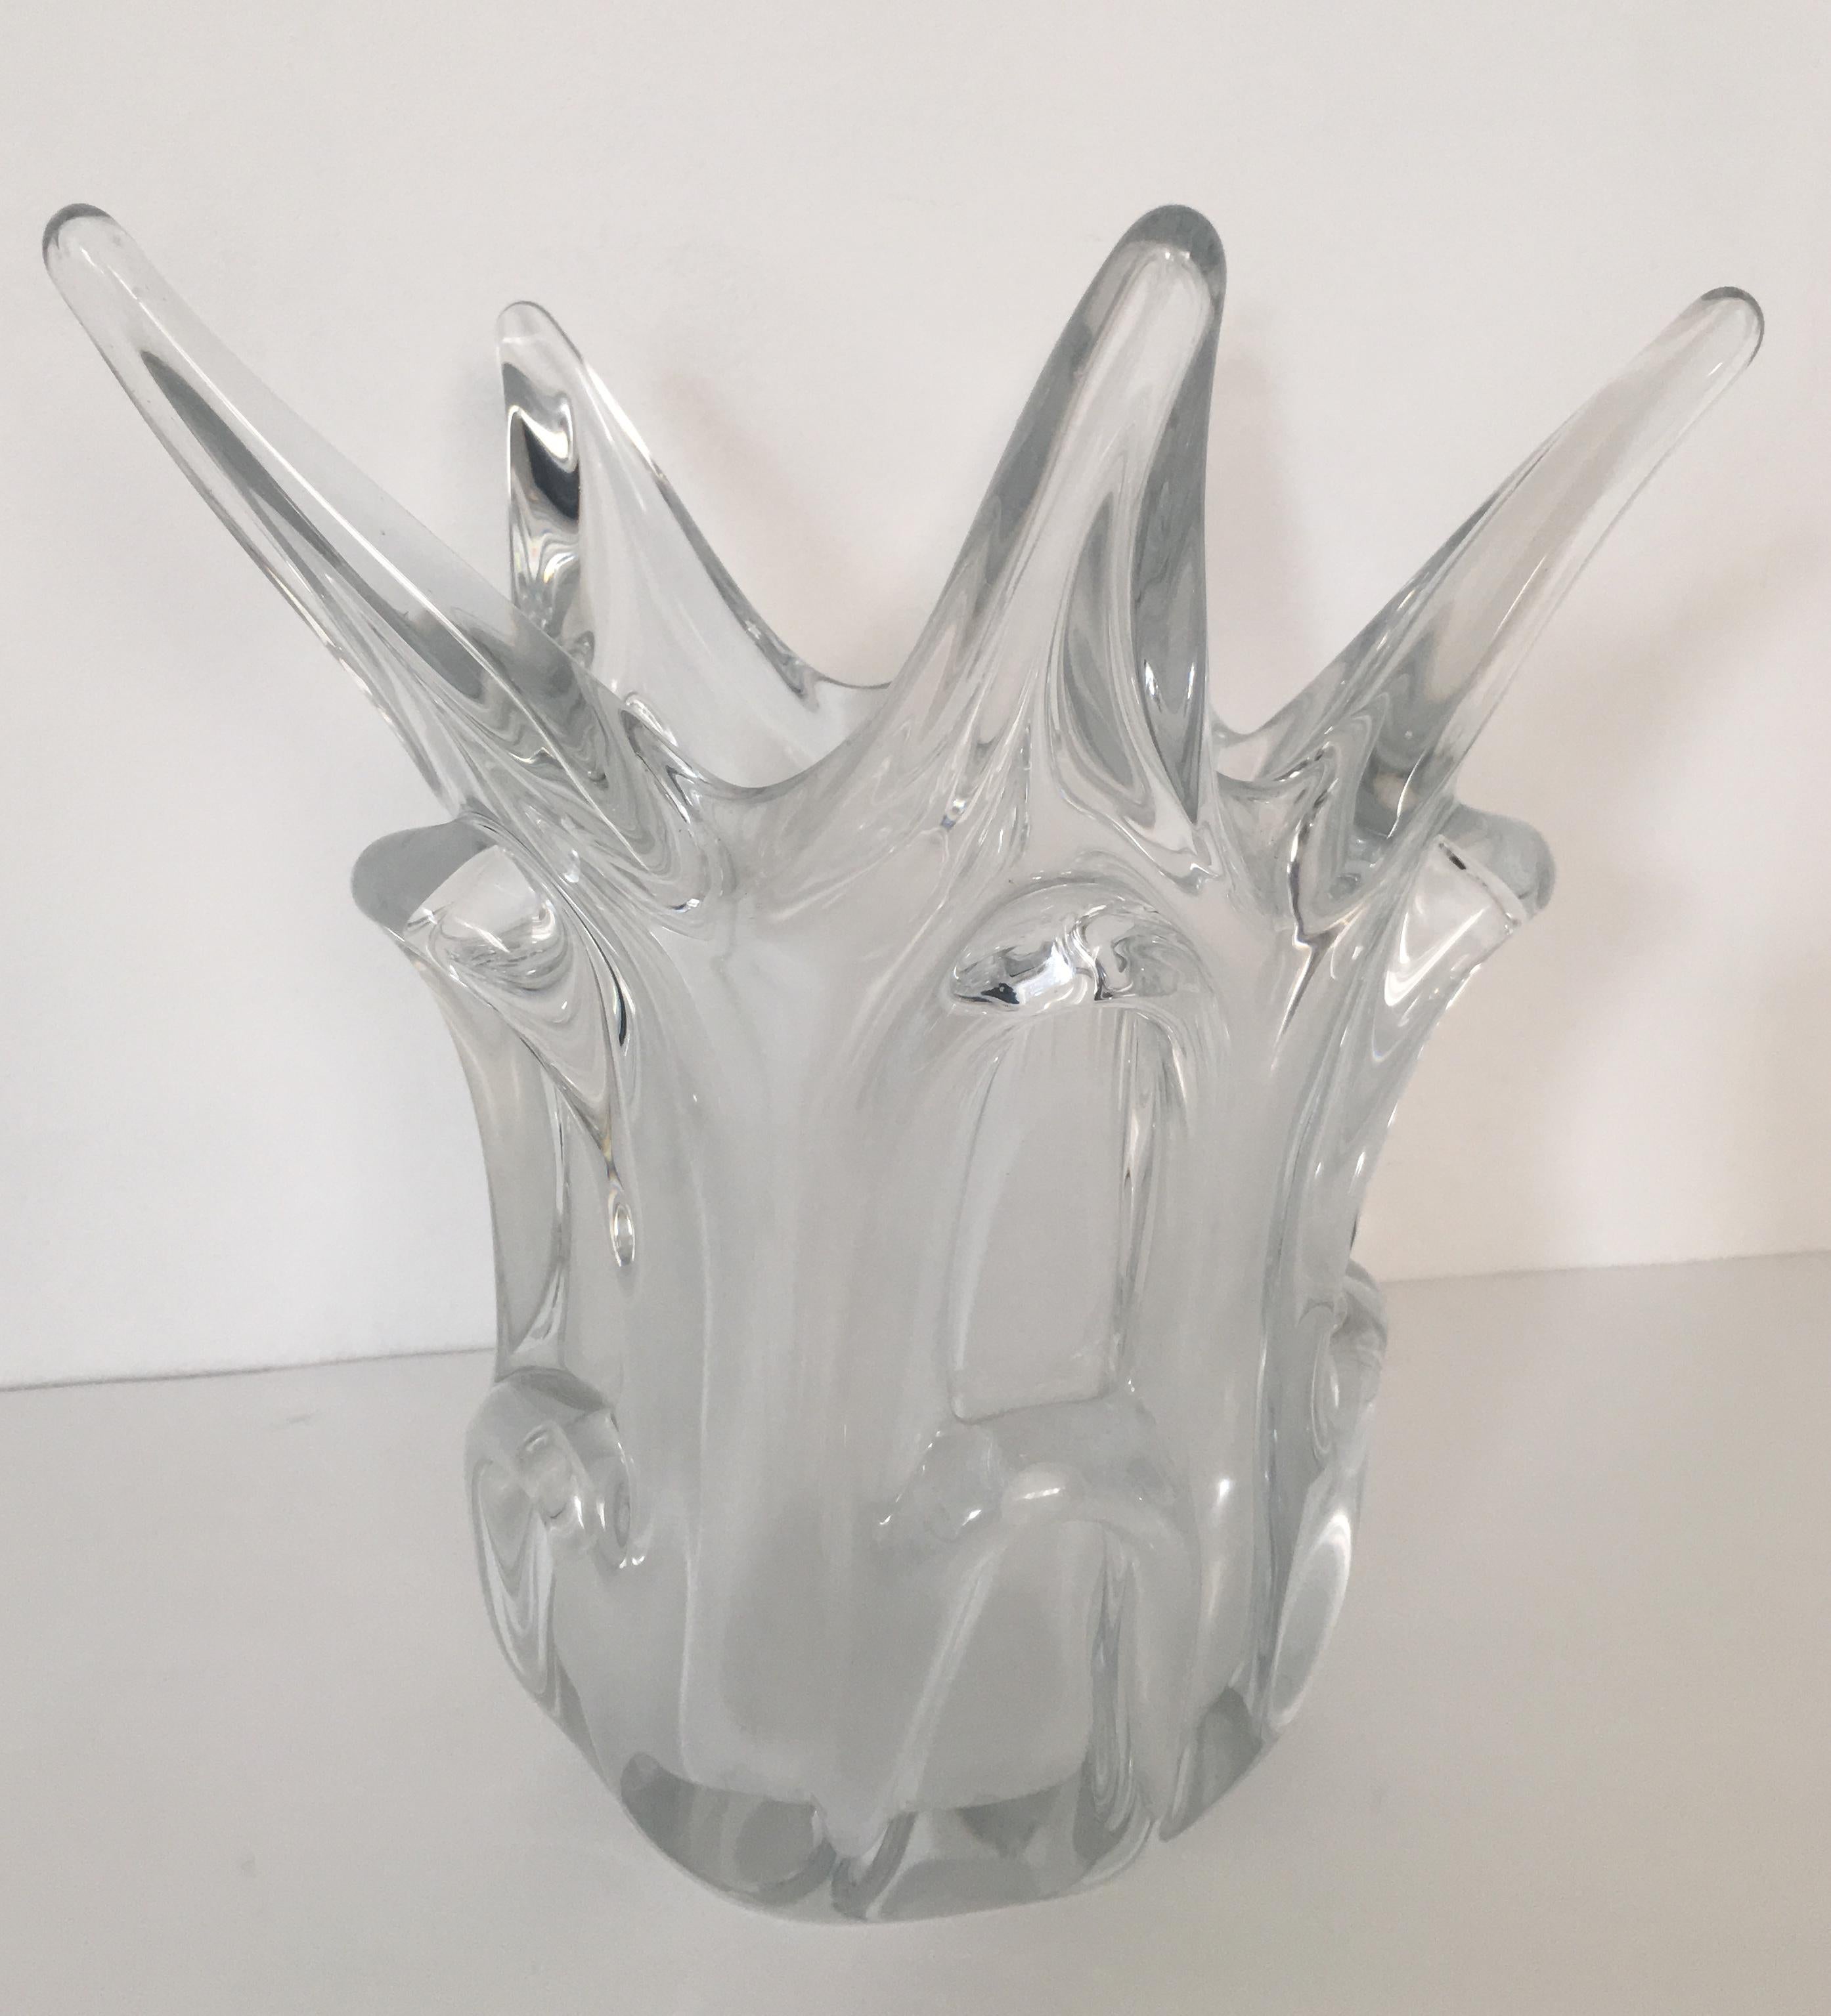 Handgefertigte, kannelierte Vase aus der Mitte des Jahrhunderts.
Ein wunderschönes Designerstück aus klarem Bleikristall, typisch für französisches Kunstglas aus den 1950er-1960er Jahren. 

Perfekter Zustand. Keine Chips oder Risse. Ein tolles